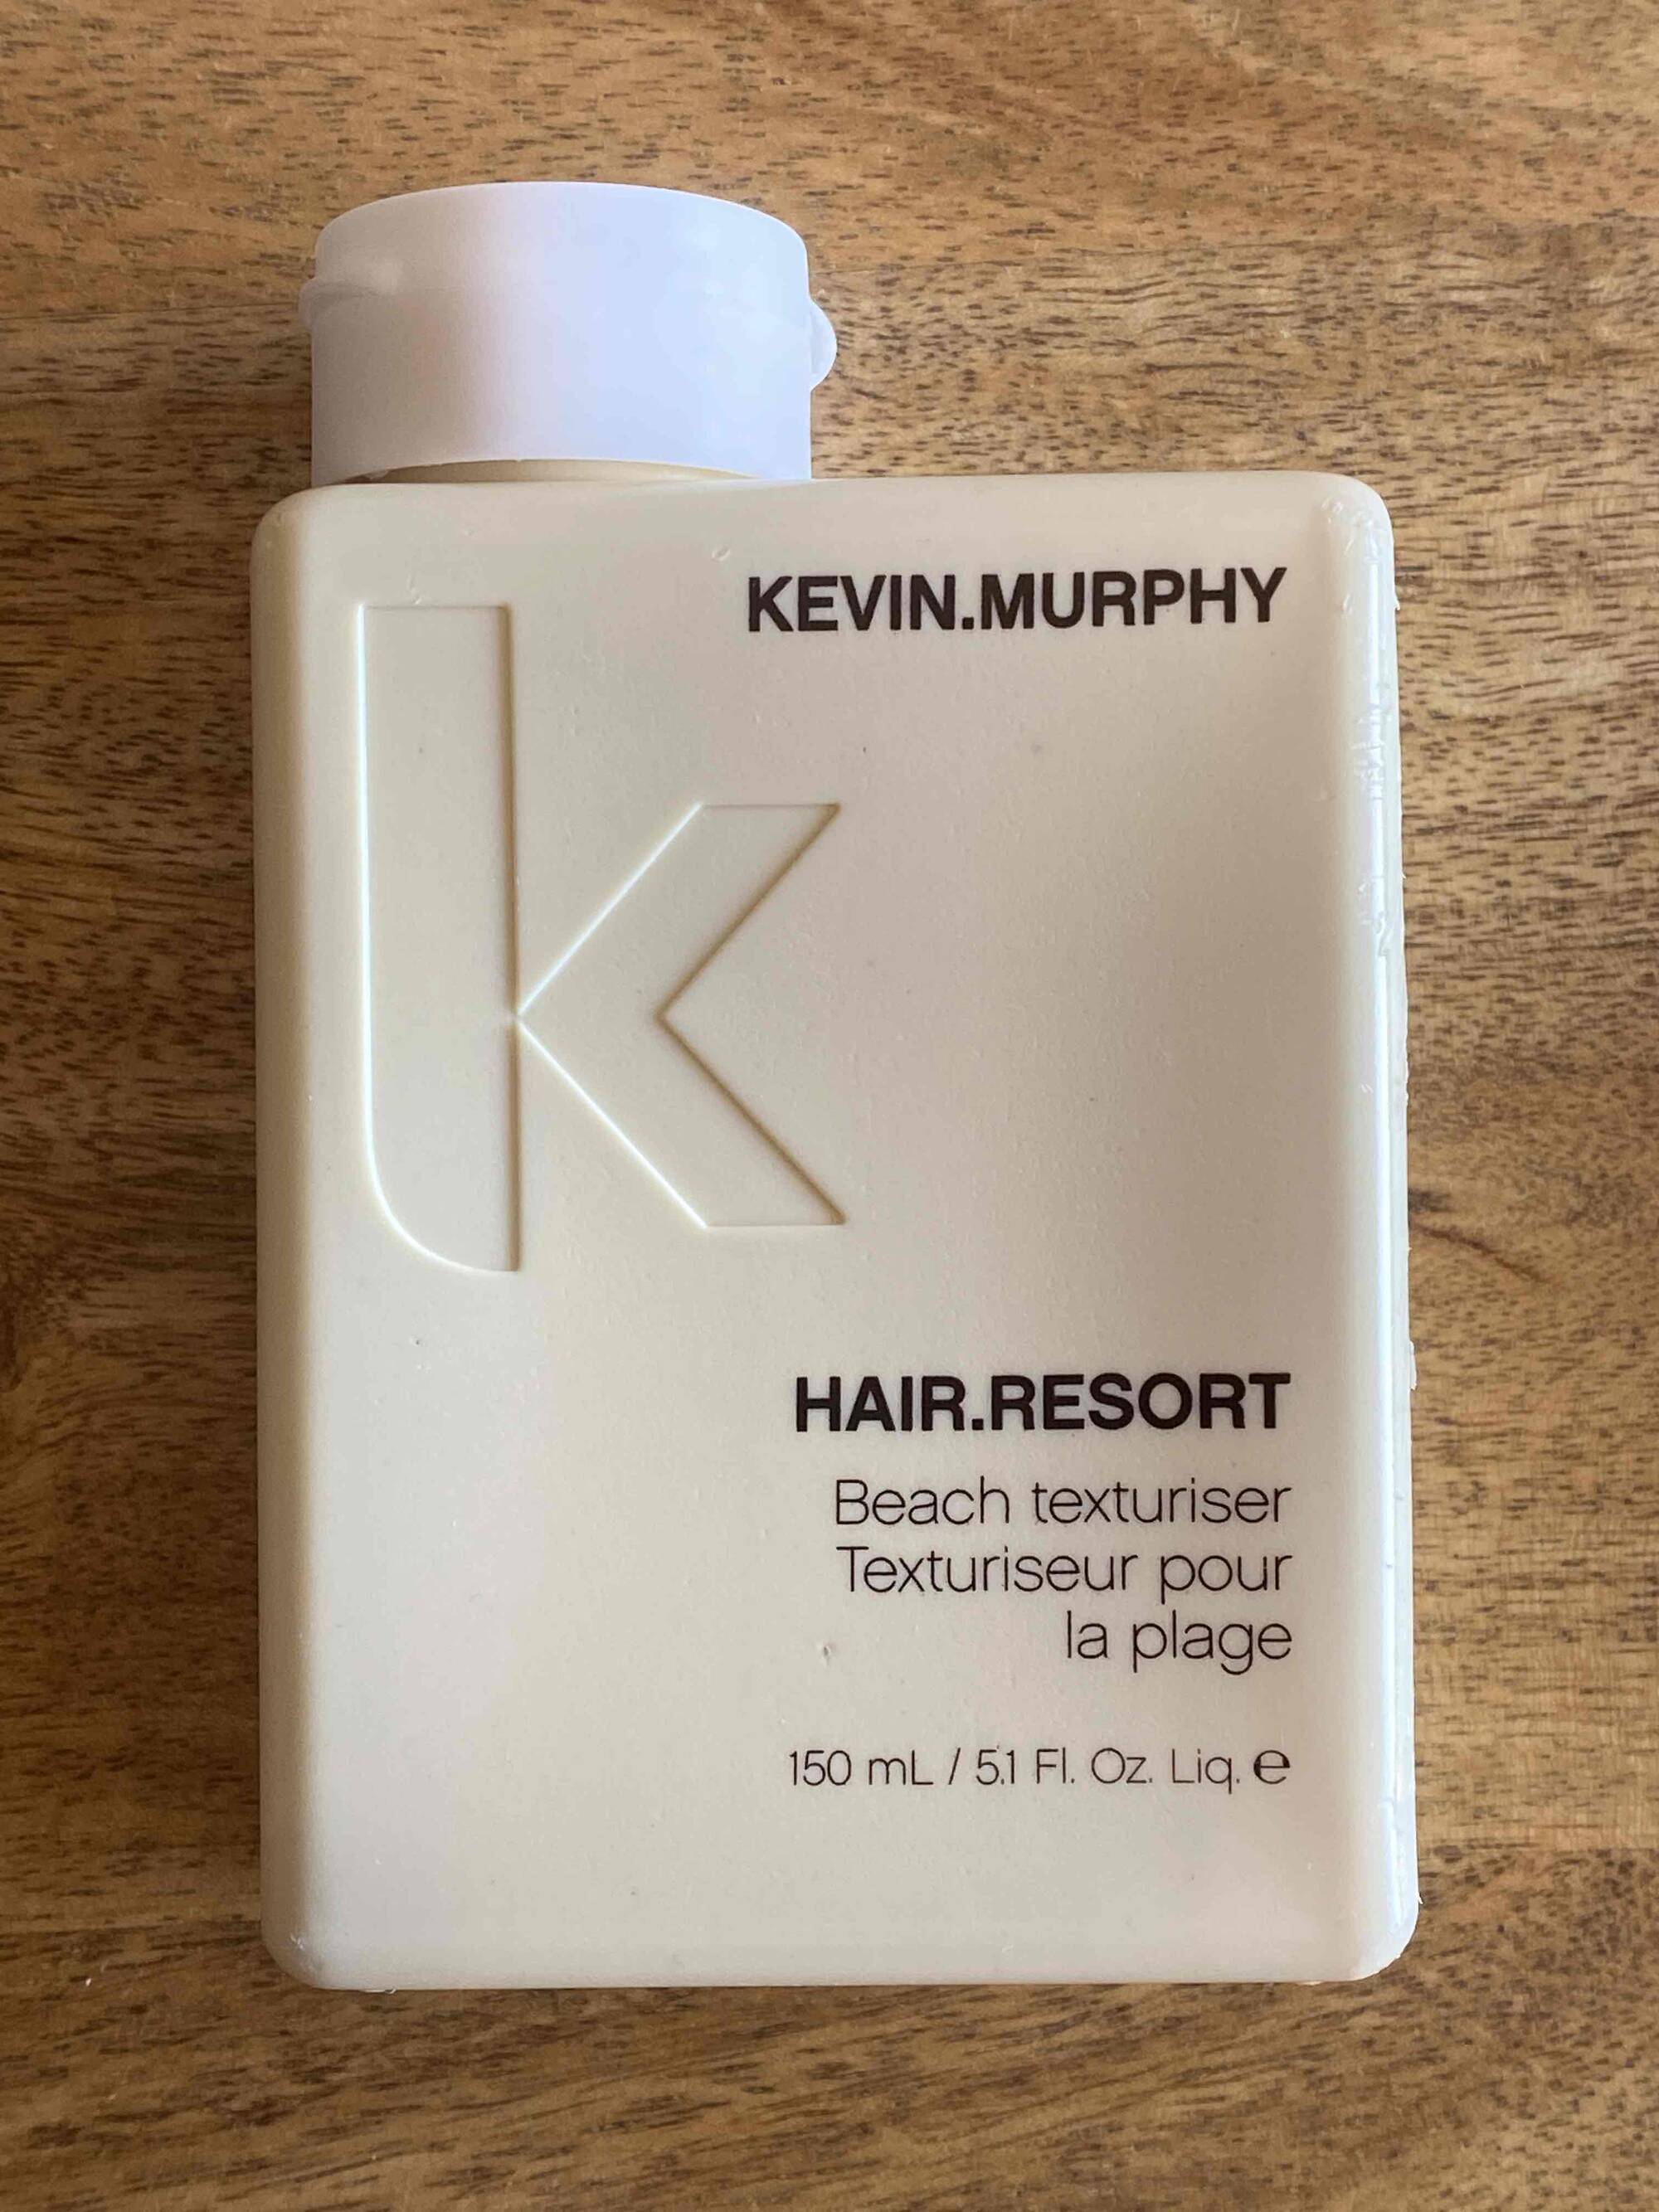 KEVIN MURPHY - Hair resort - Texturiseur pour la plage